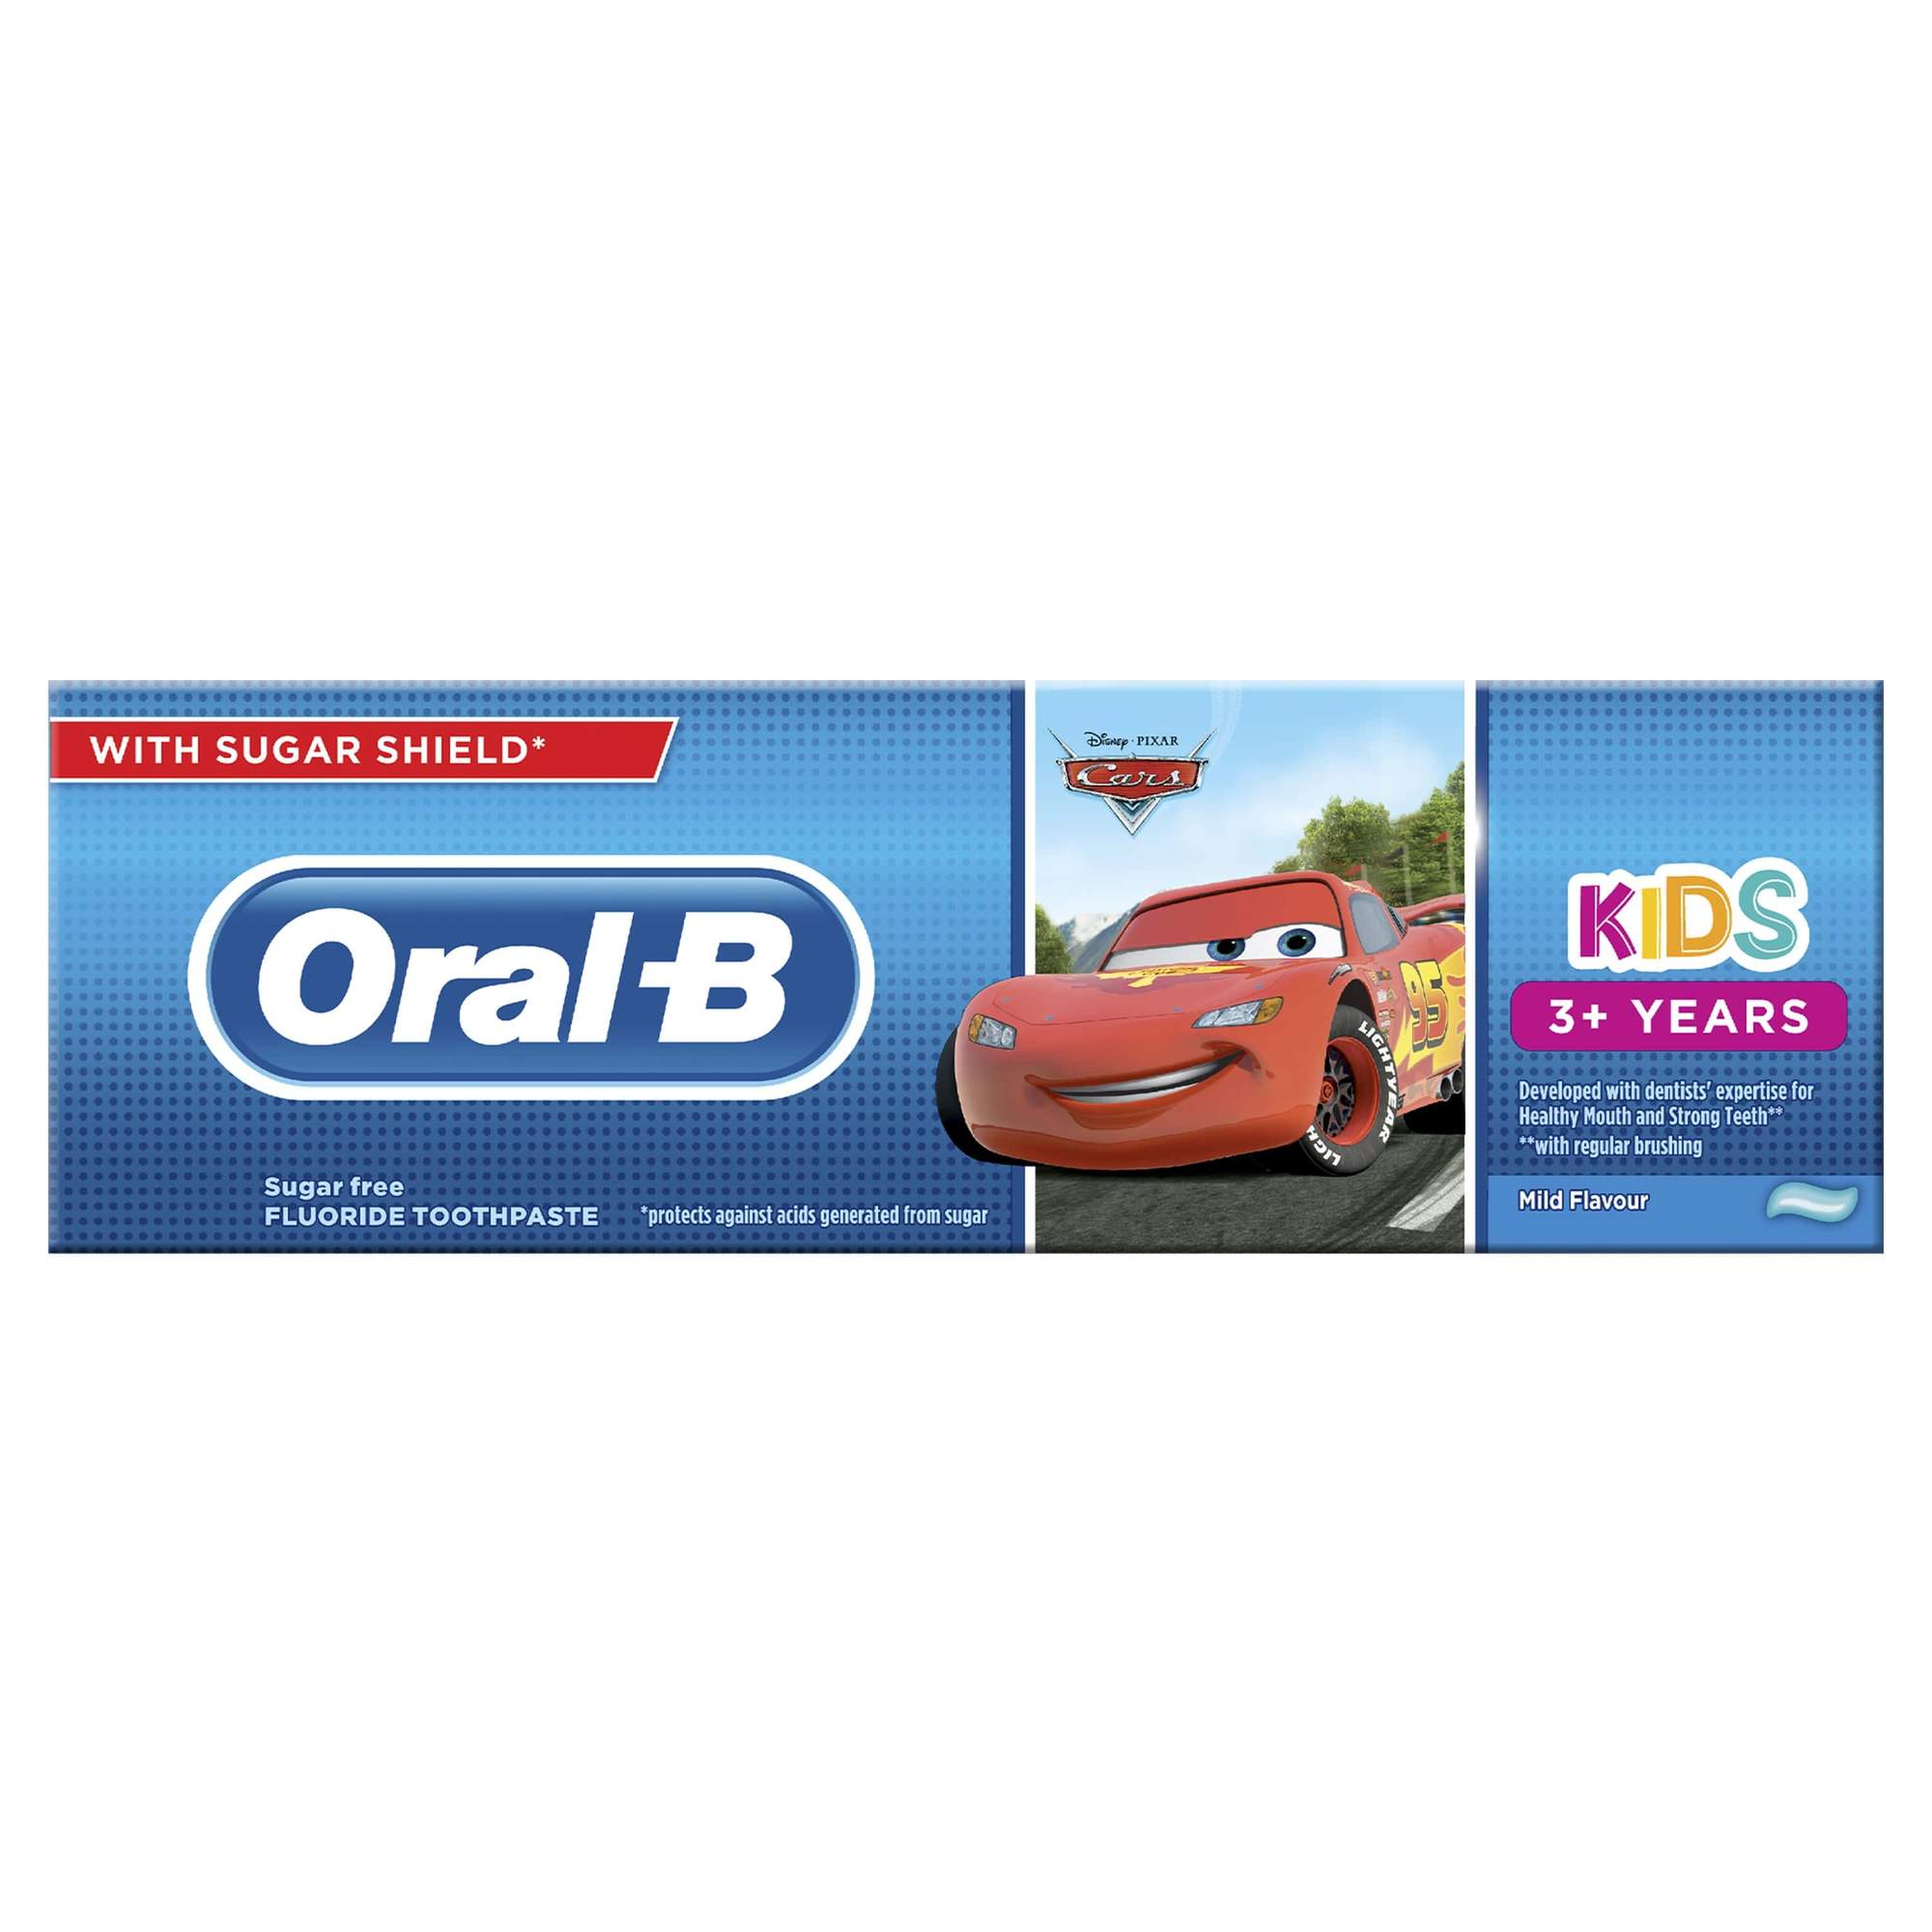 ORAL-B dantų pasta nuo 3 metų, 75 ml, CARS